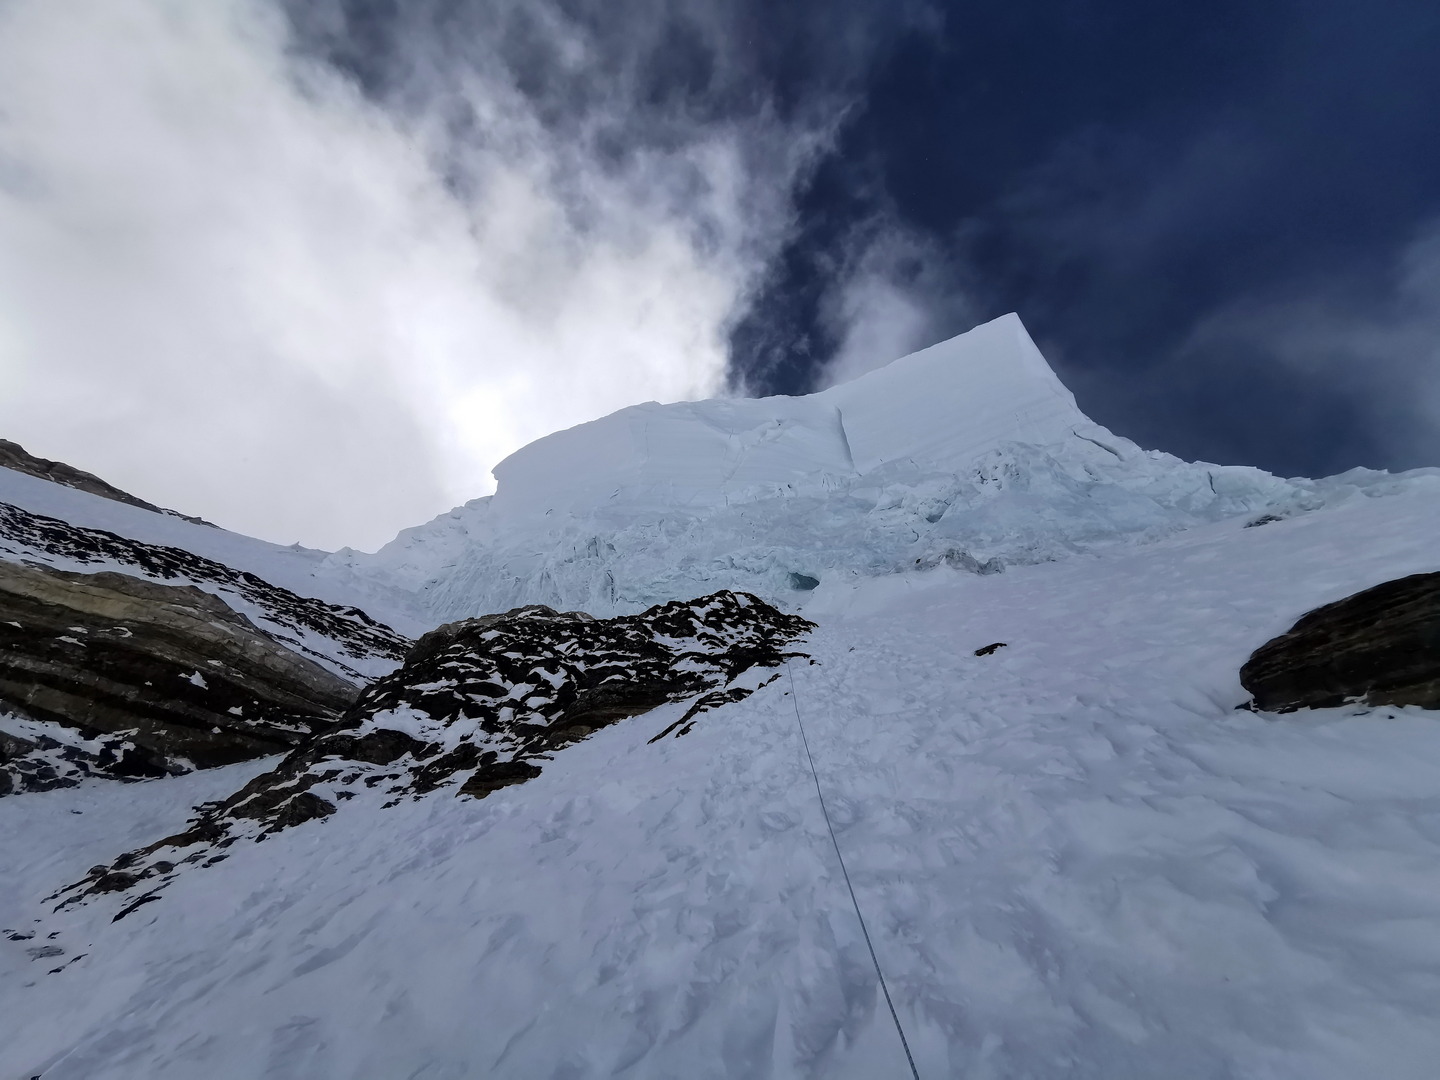 Az ember feje fölött kifelé dőlve tornyosul a 120 m magas jégfal, a Palacknyak-kuloár Forrás: Eseményhorizont